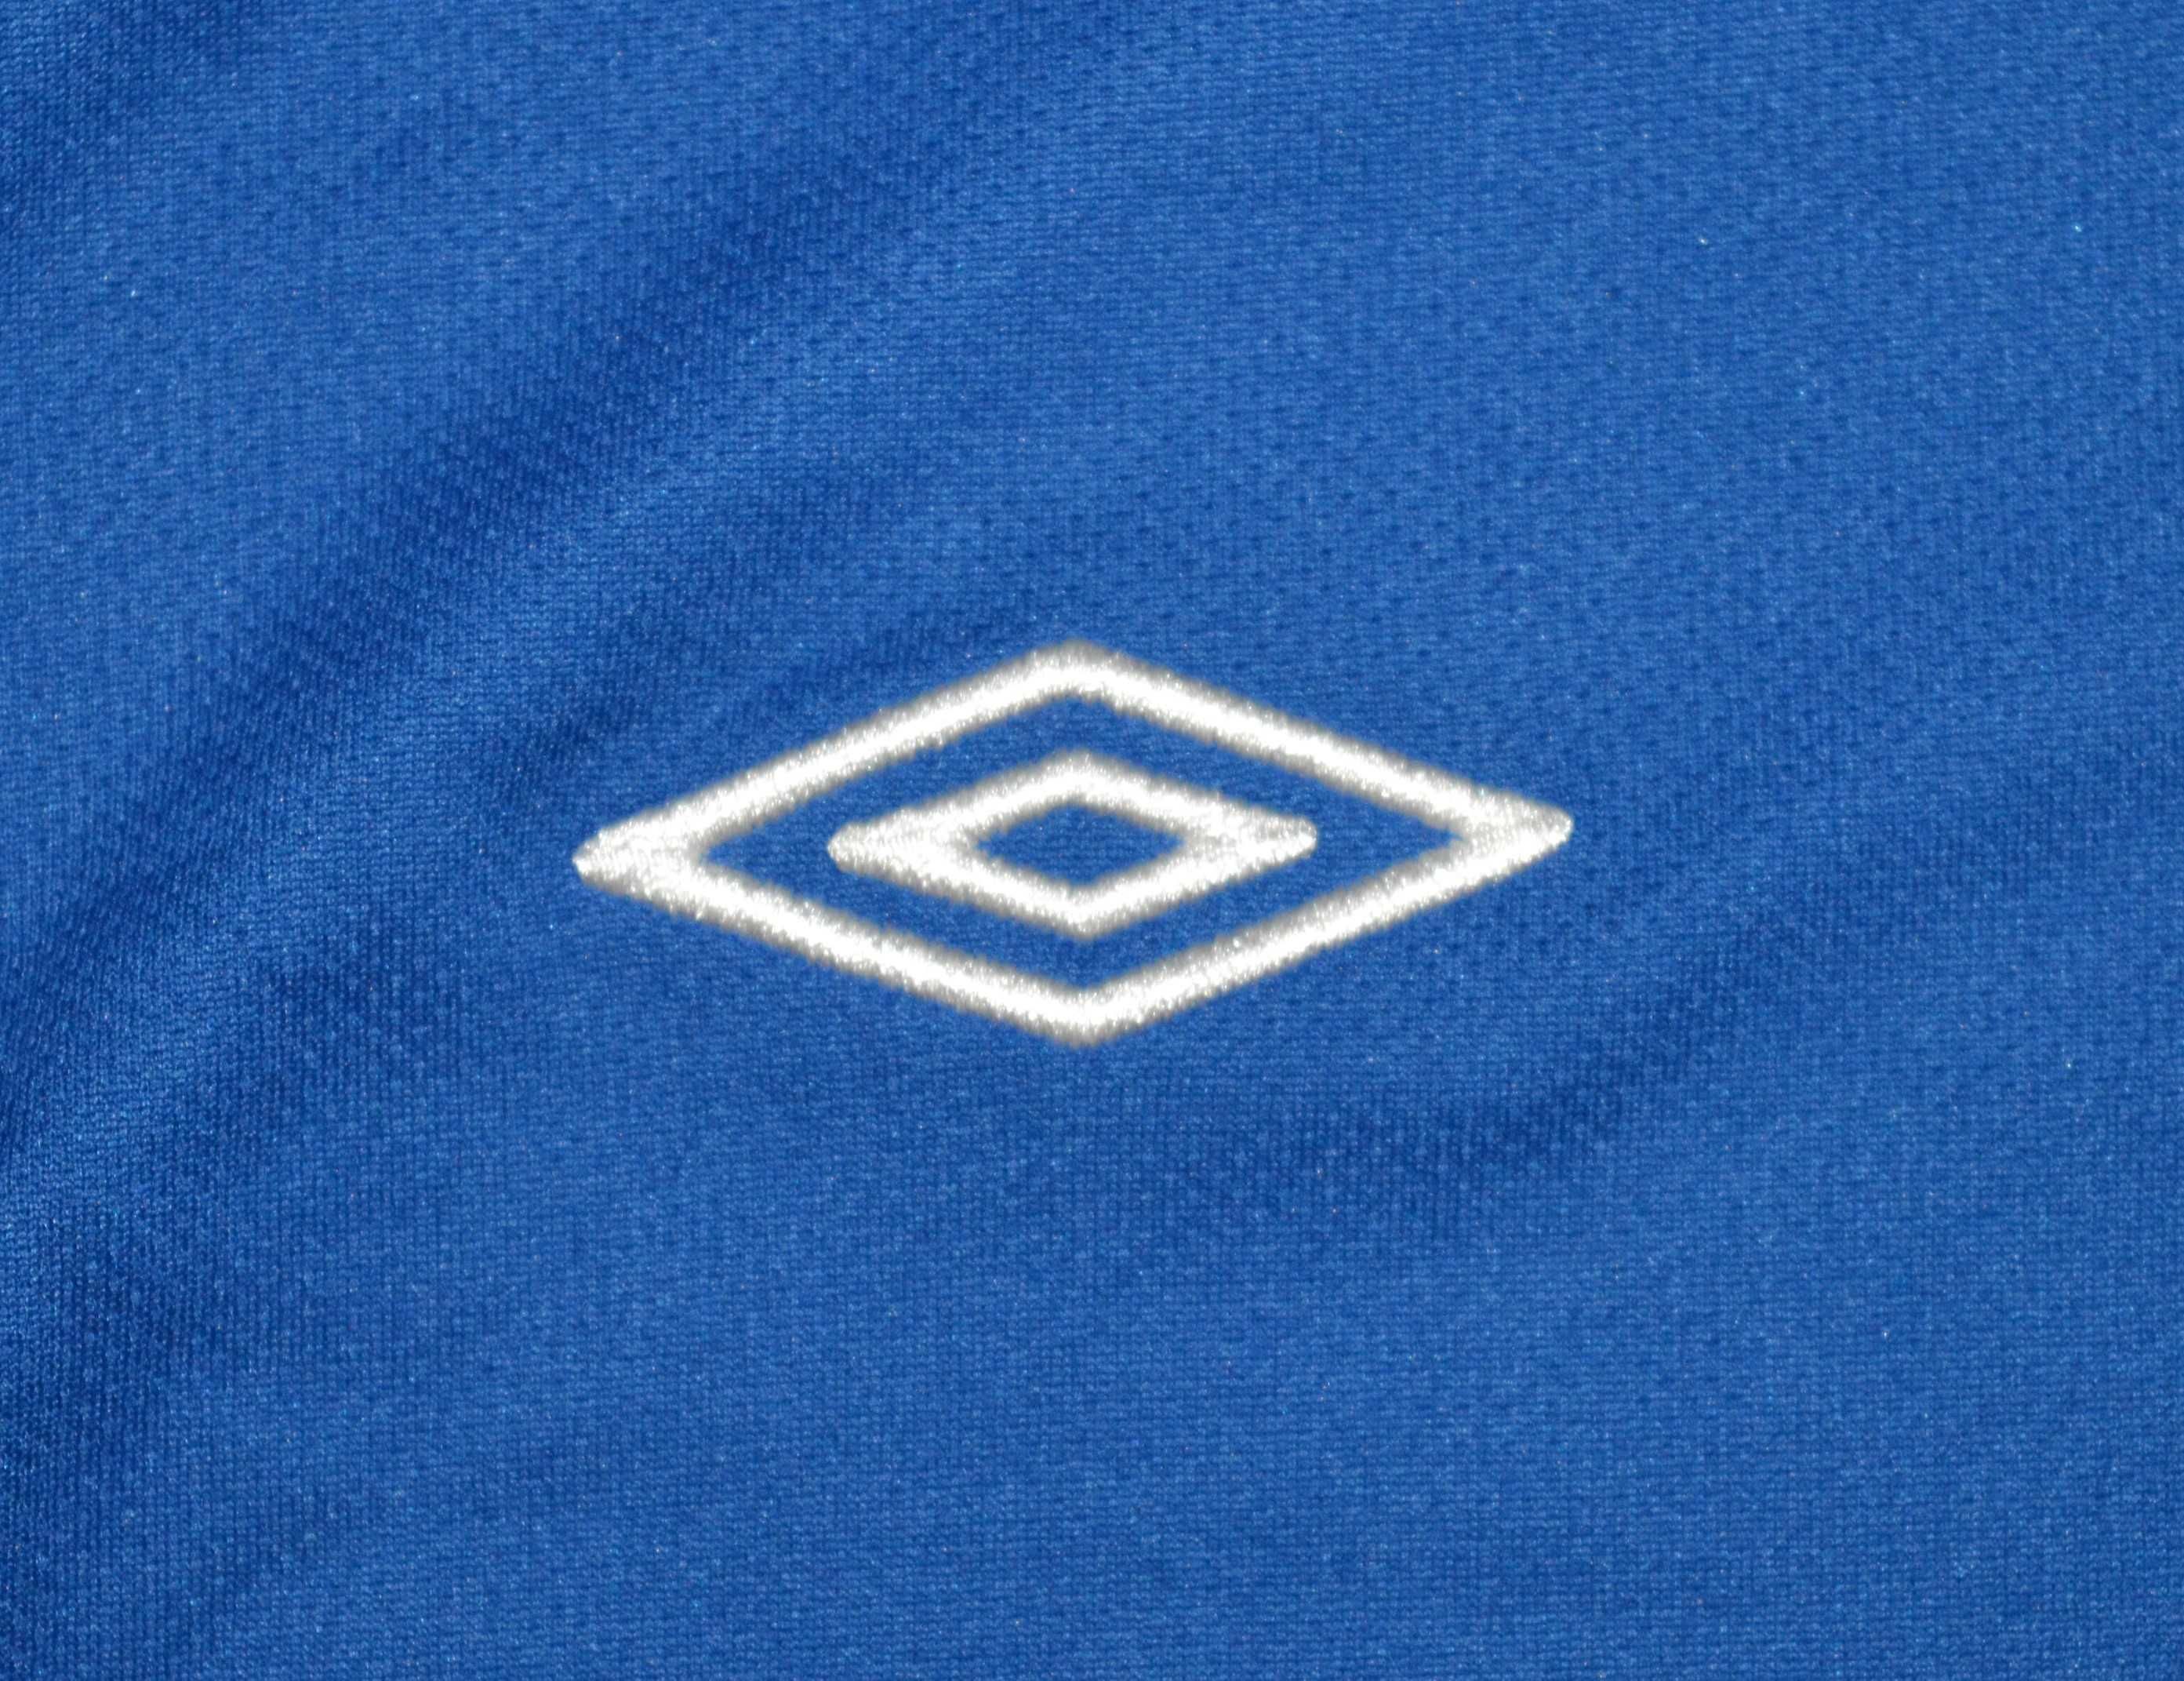 Umbro _ koszulka z rękawem Rangers F.C. sezon 2012/13 _ YXL _ 158cm